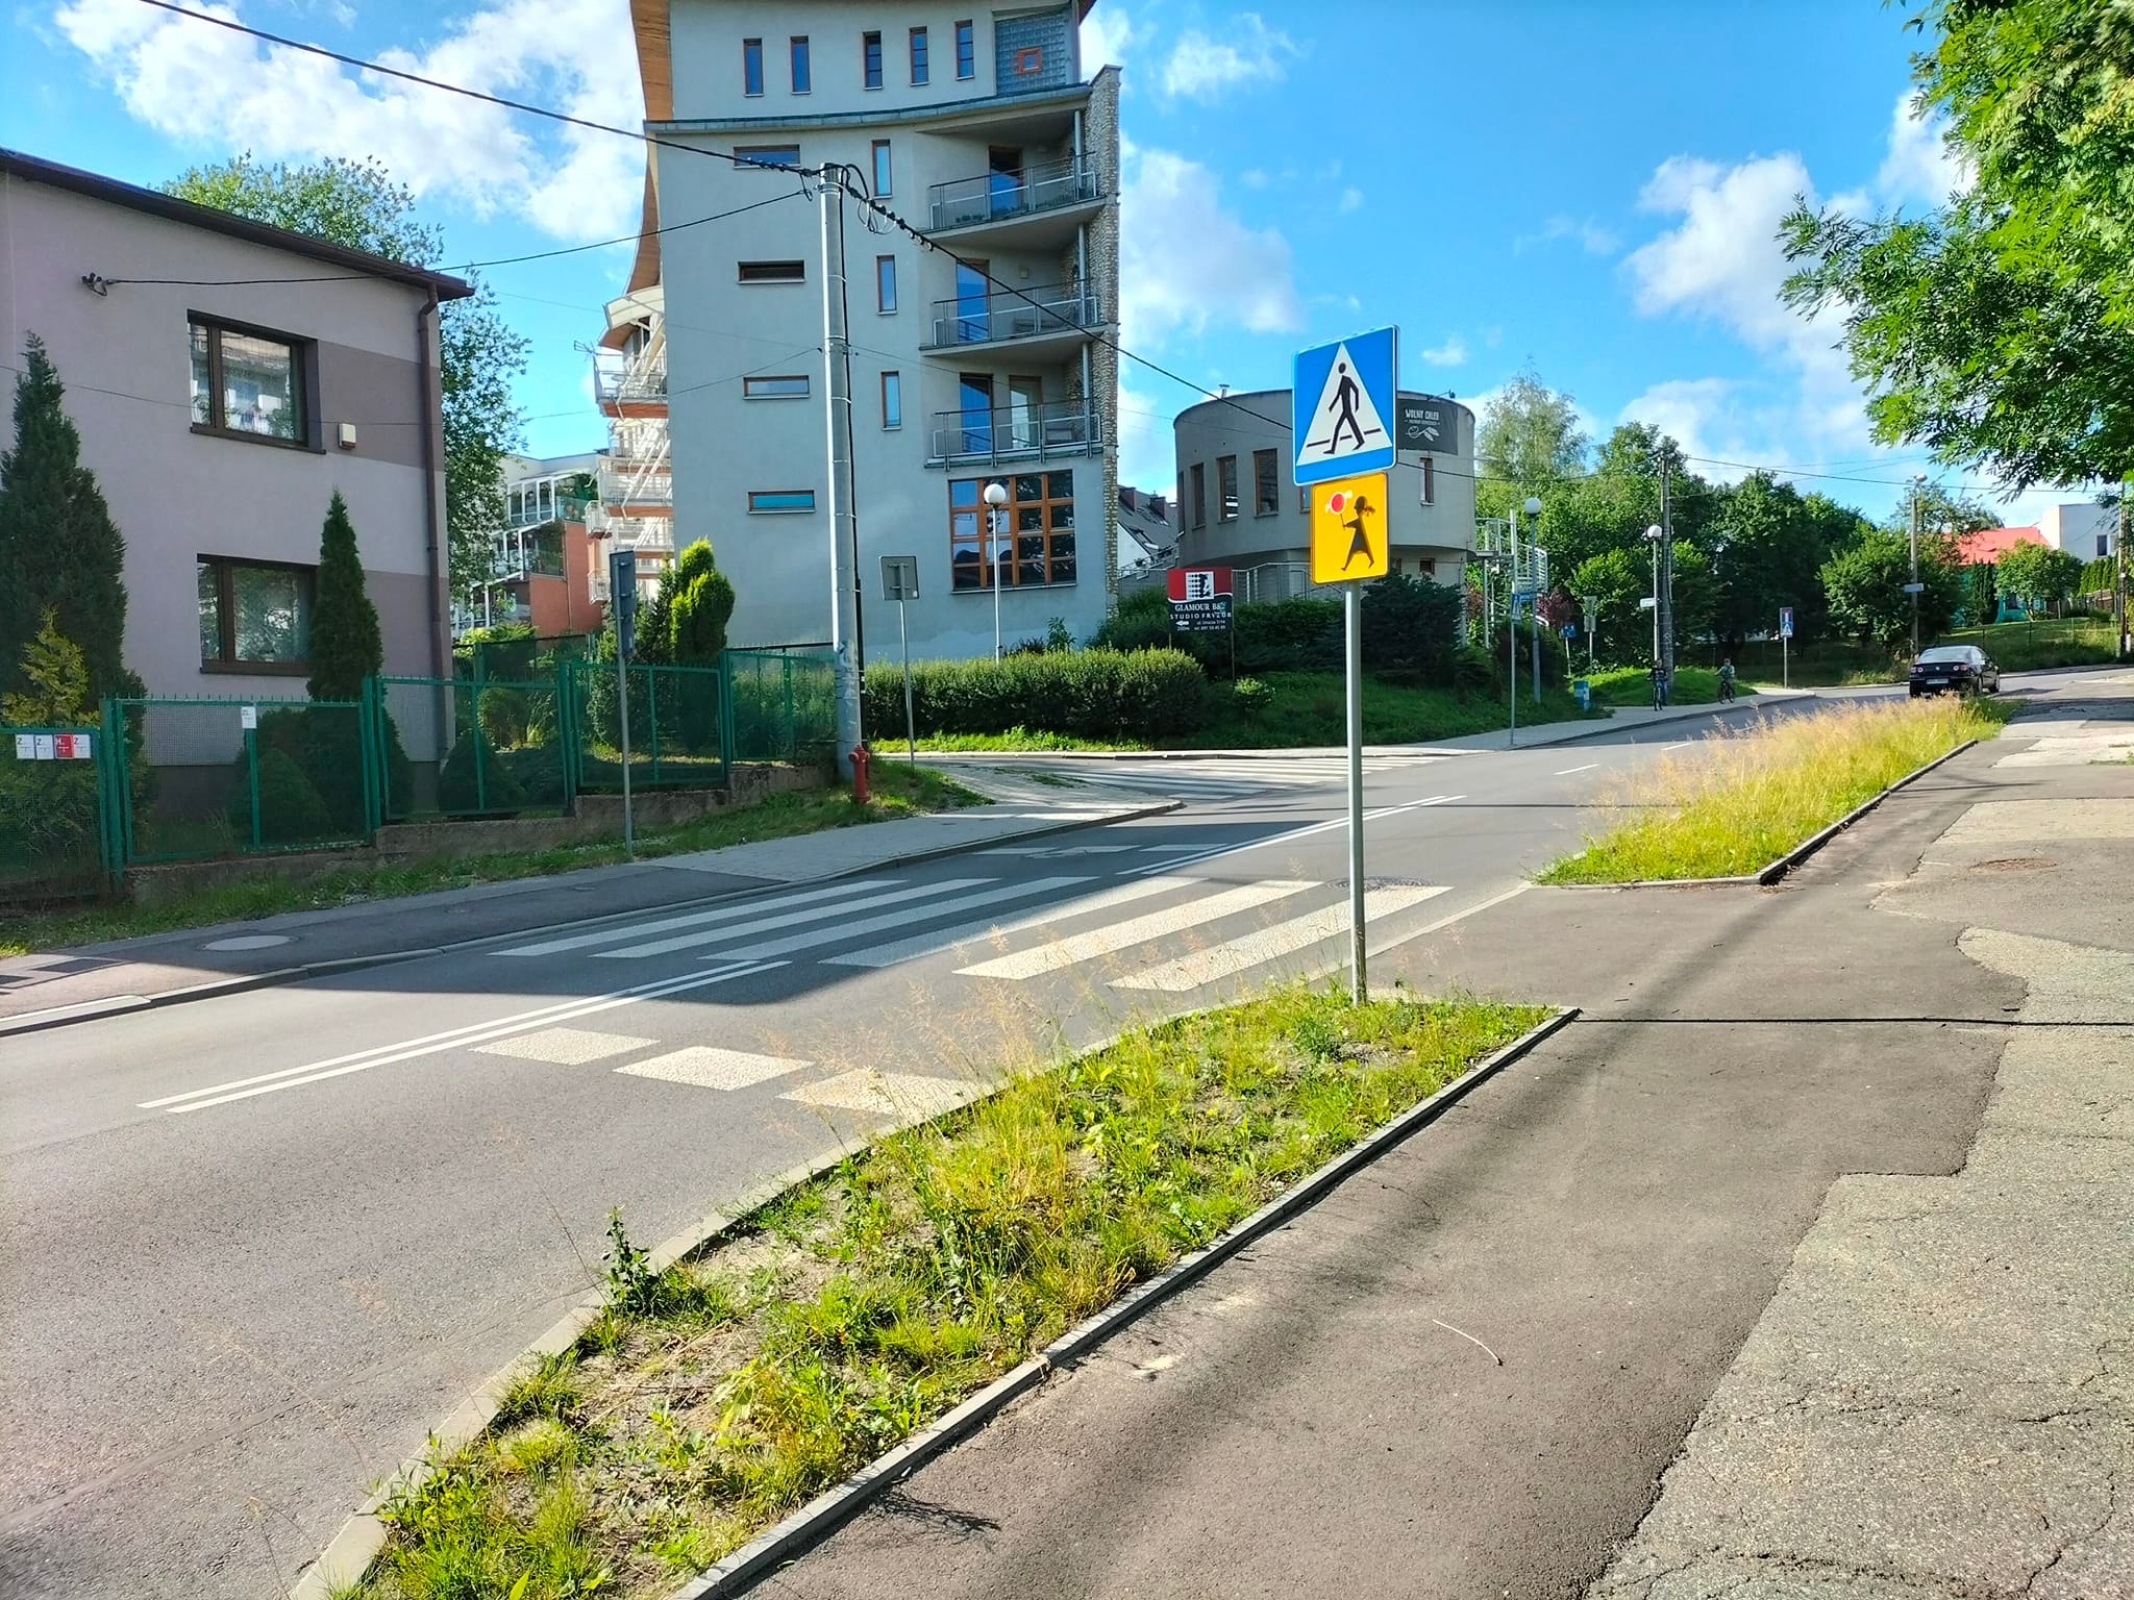 Fot. Kokociniec.pl. Autorki petycji chciałyby, aby na przejściach dla pieszych szczególnie uczęszczanych przez dzieci powstała sygnalizacja świetlna